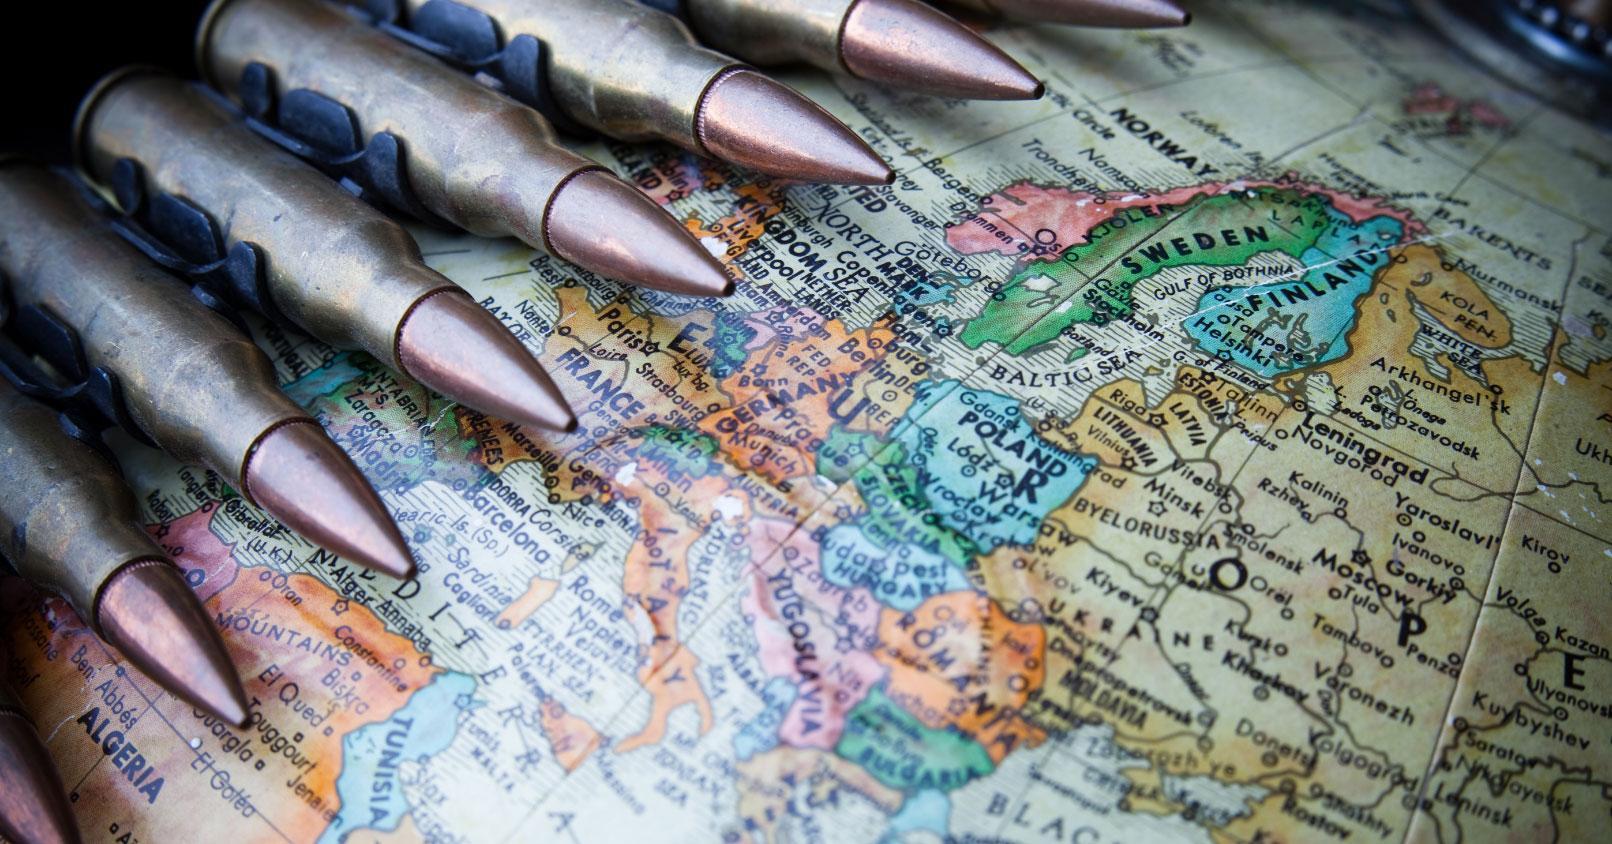 NUKLEARE TEILHABE: Warum US-Atomwaffen in Europa sind